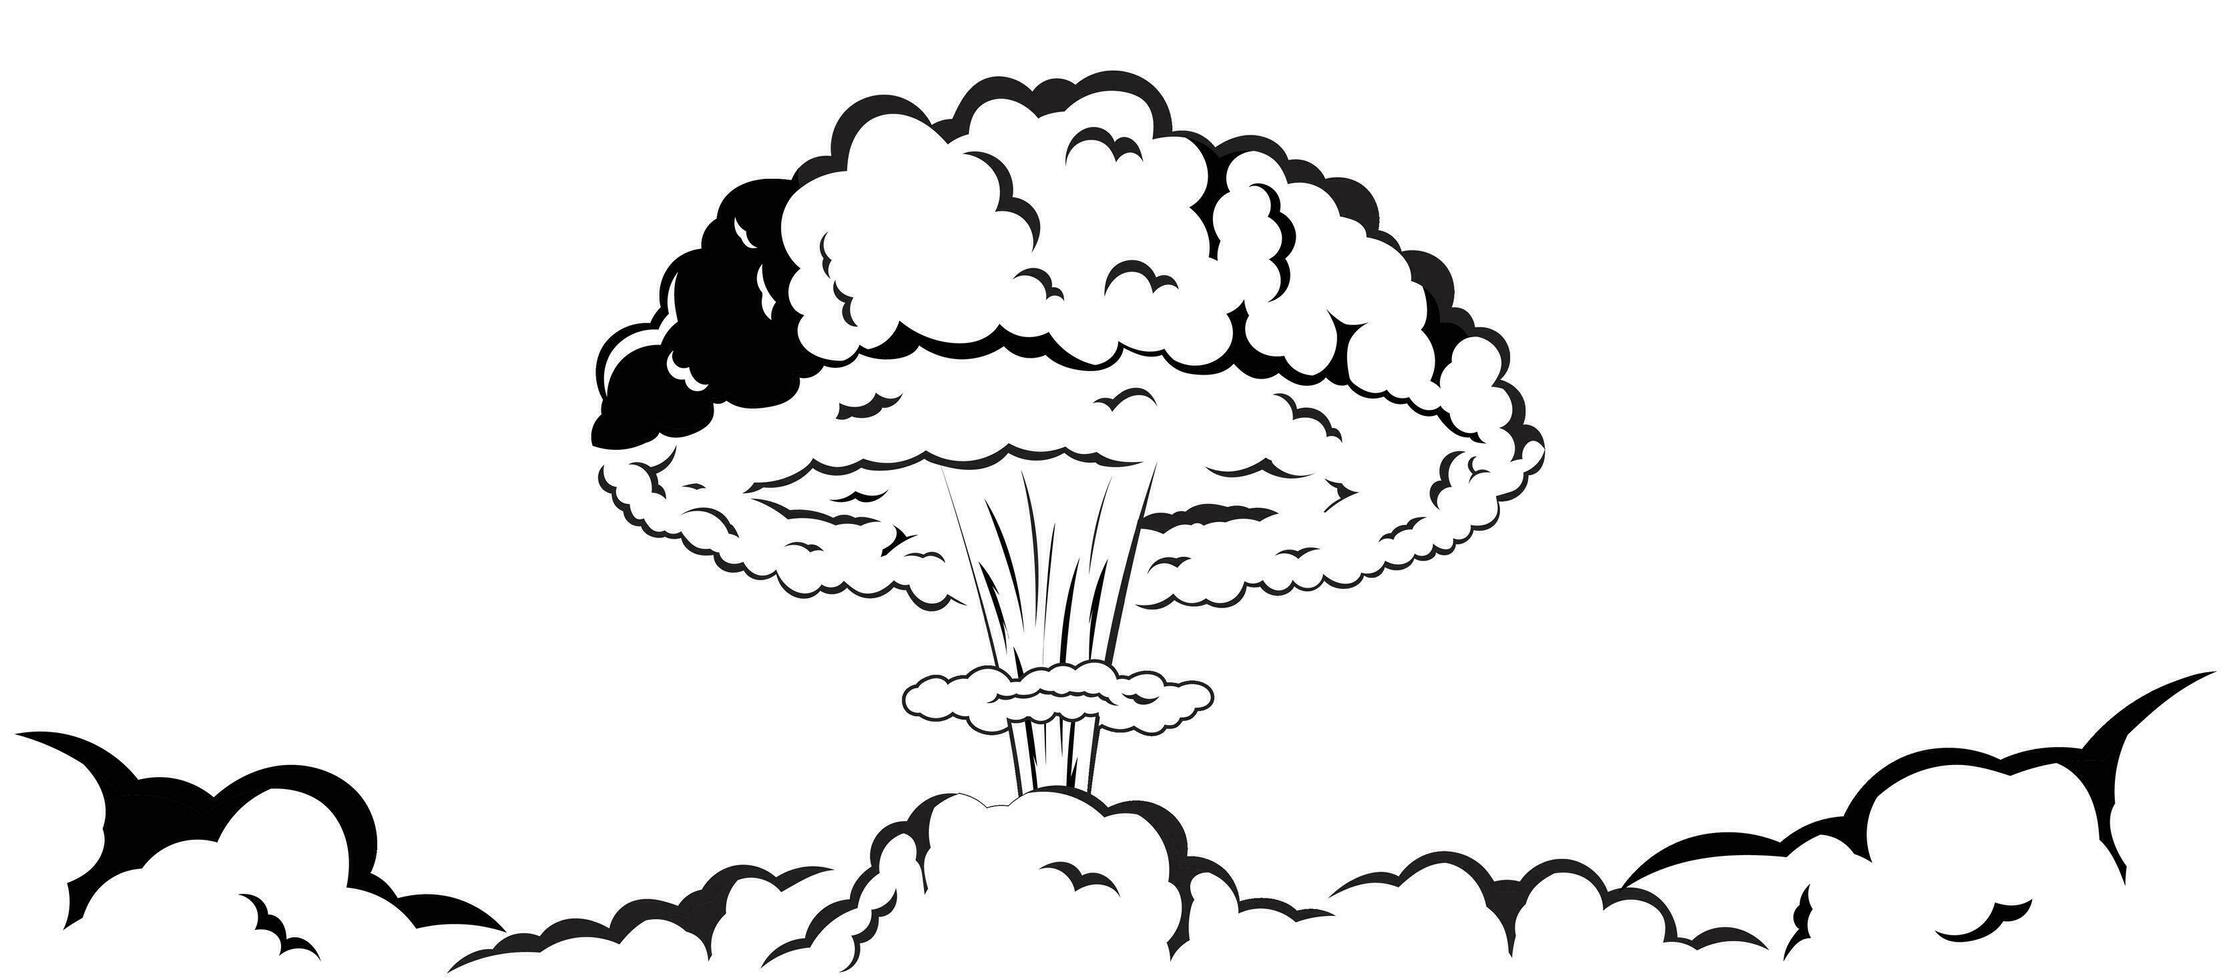 paddestoel rook effect nucleair bom explosie tekening tekening zwart en wit vector